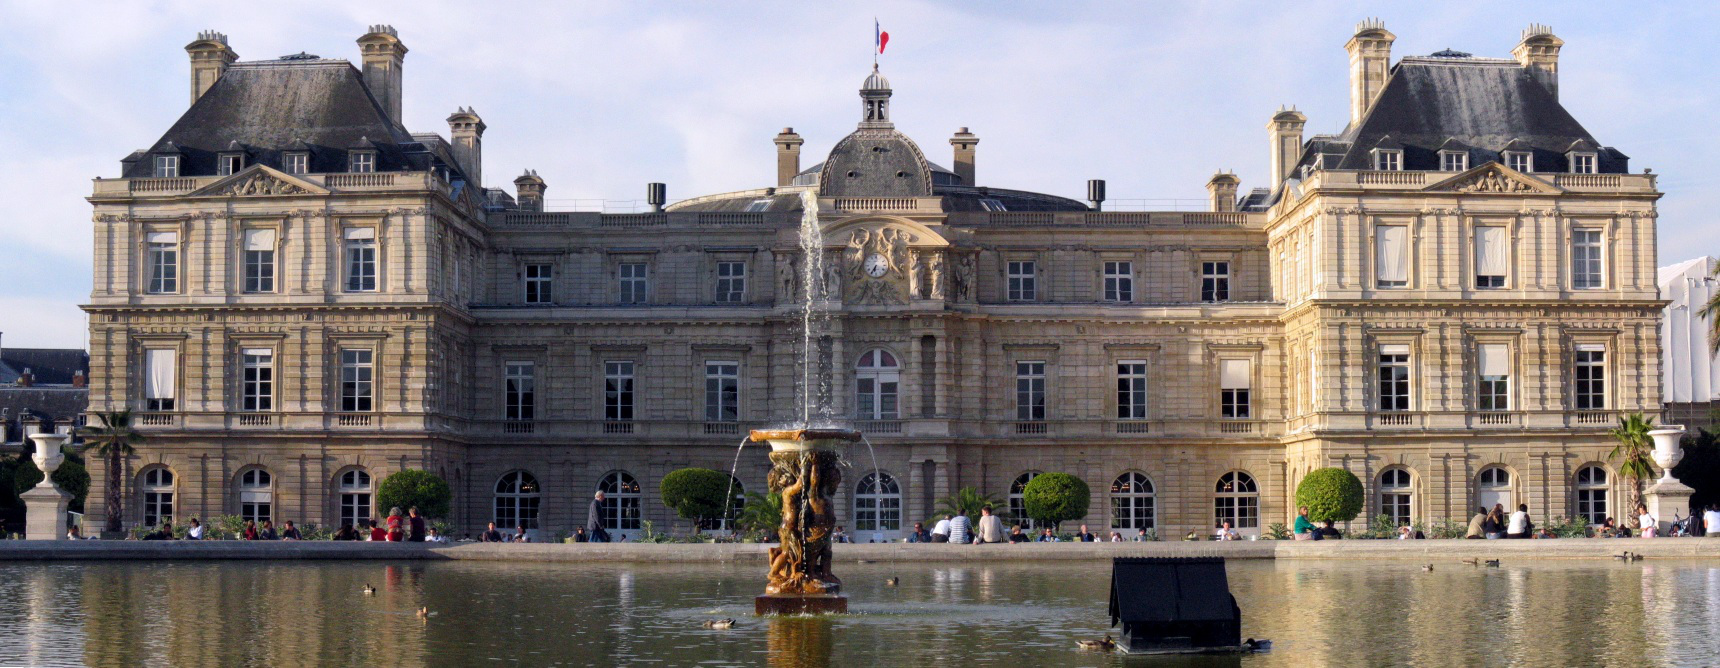 Palazzo del Lussemburgo (sede del Senato) a Parigi in Ile-de-France - Francia